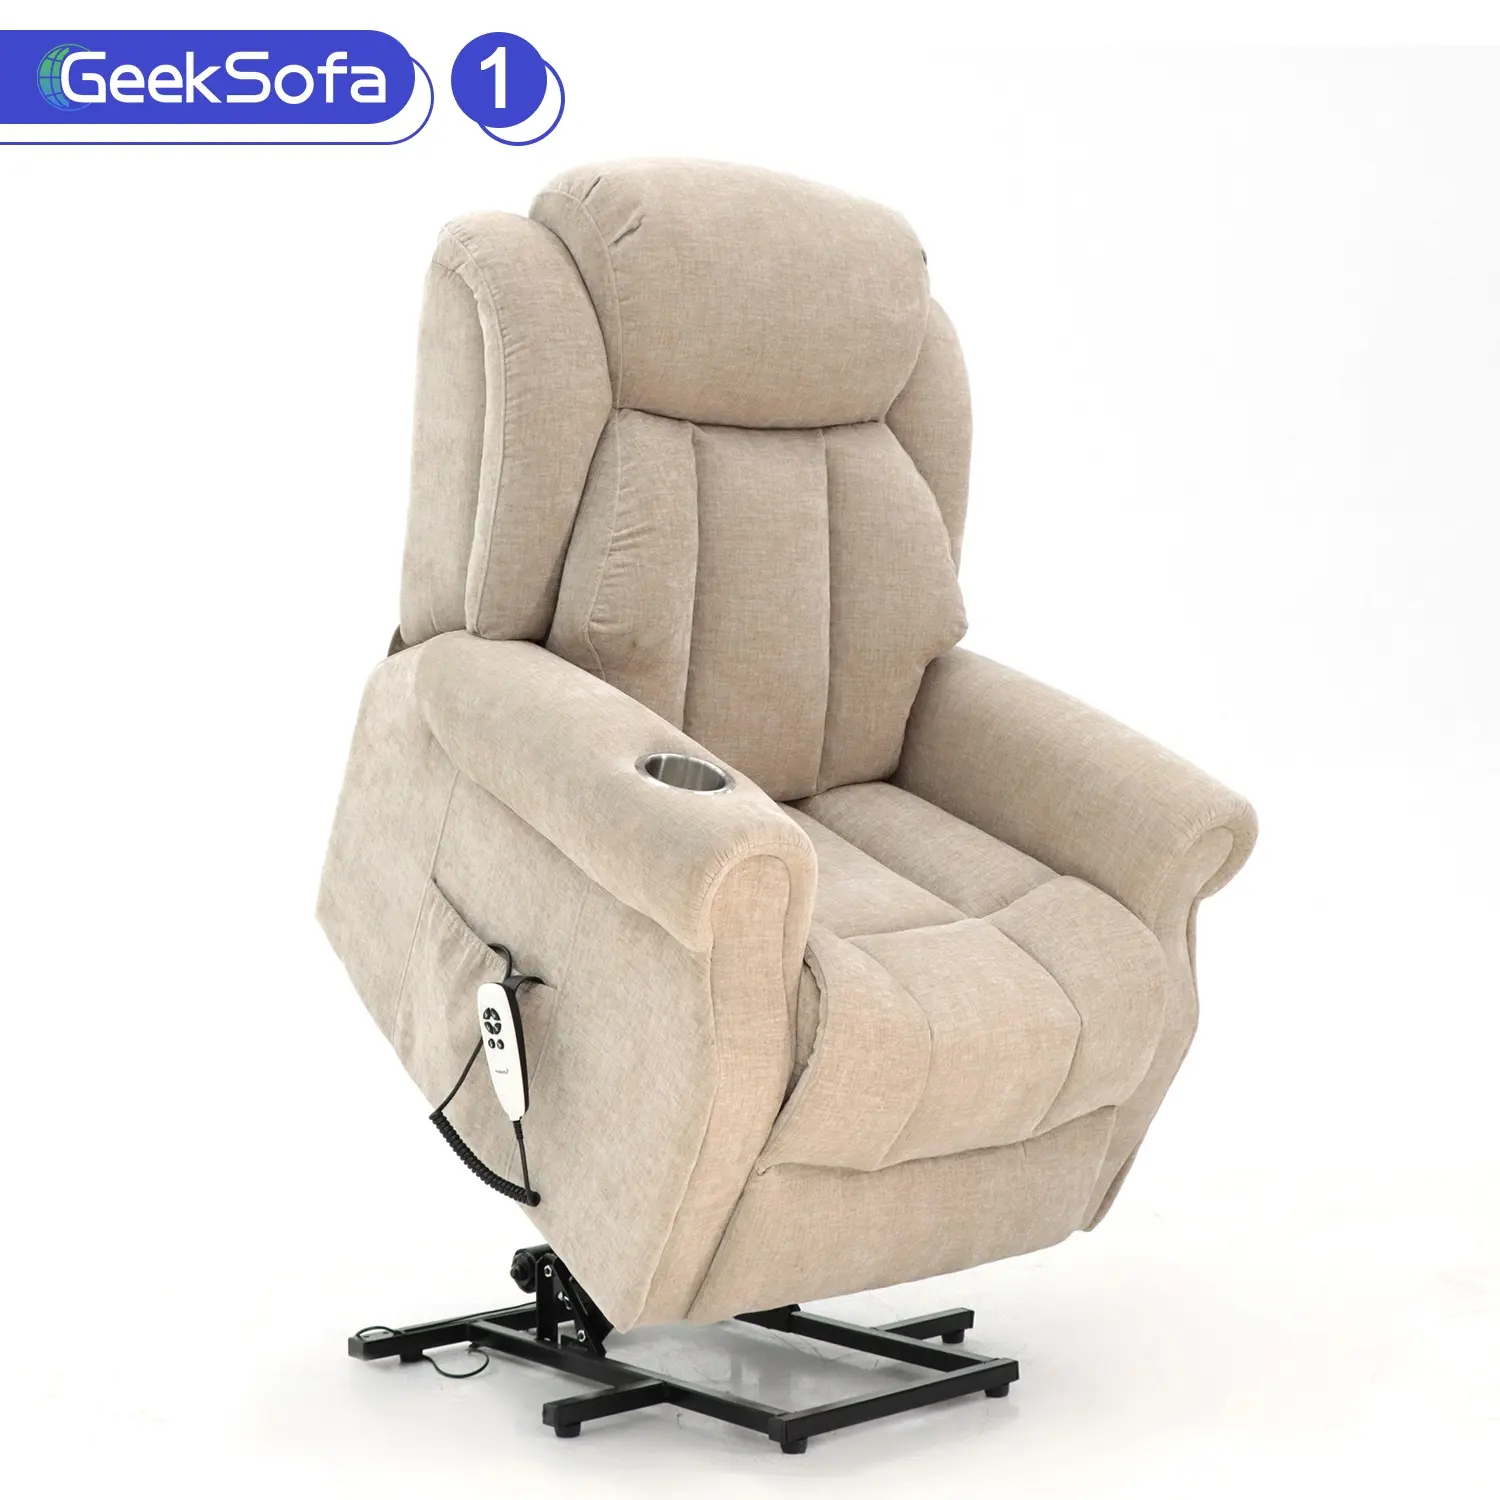 Geeks ofa Fabric Power Electric Lift Liegestuhl mit Massage und Wärme für ältere Menschen